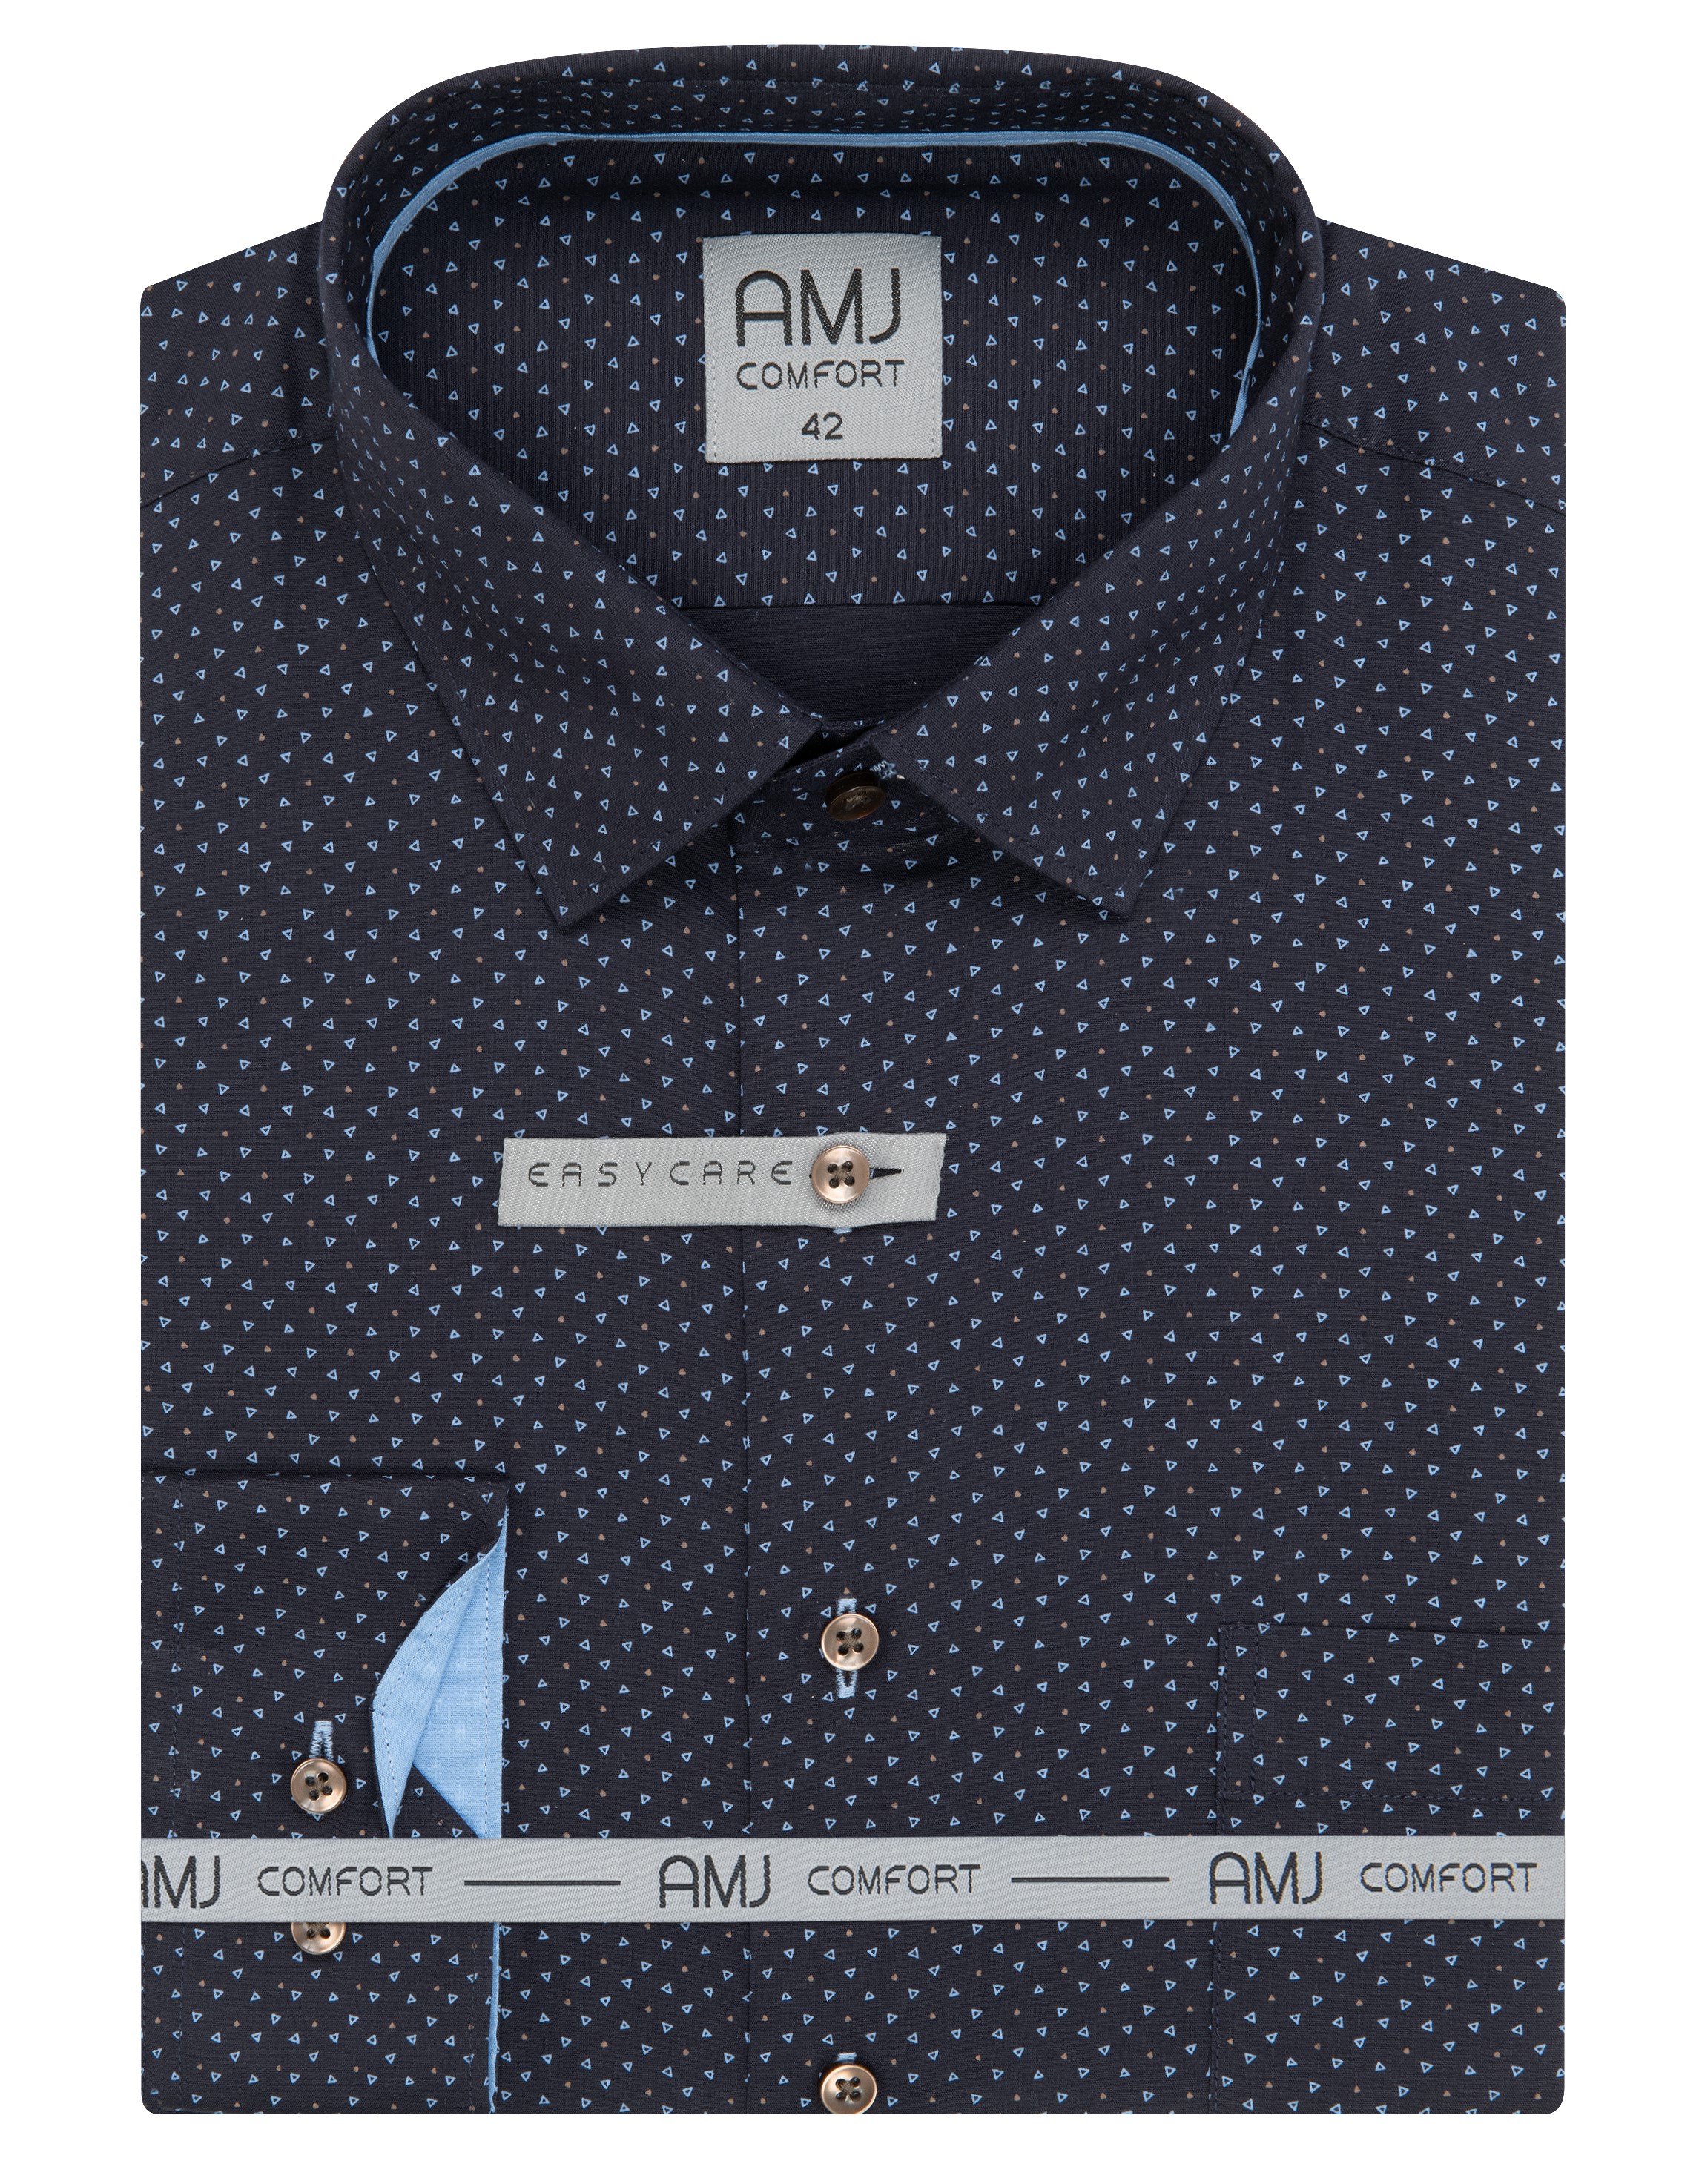 Pánská košile dlouhý rukáv AMJ VDSBR 1331 Slim Fit Comfort Velikost: 44